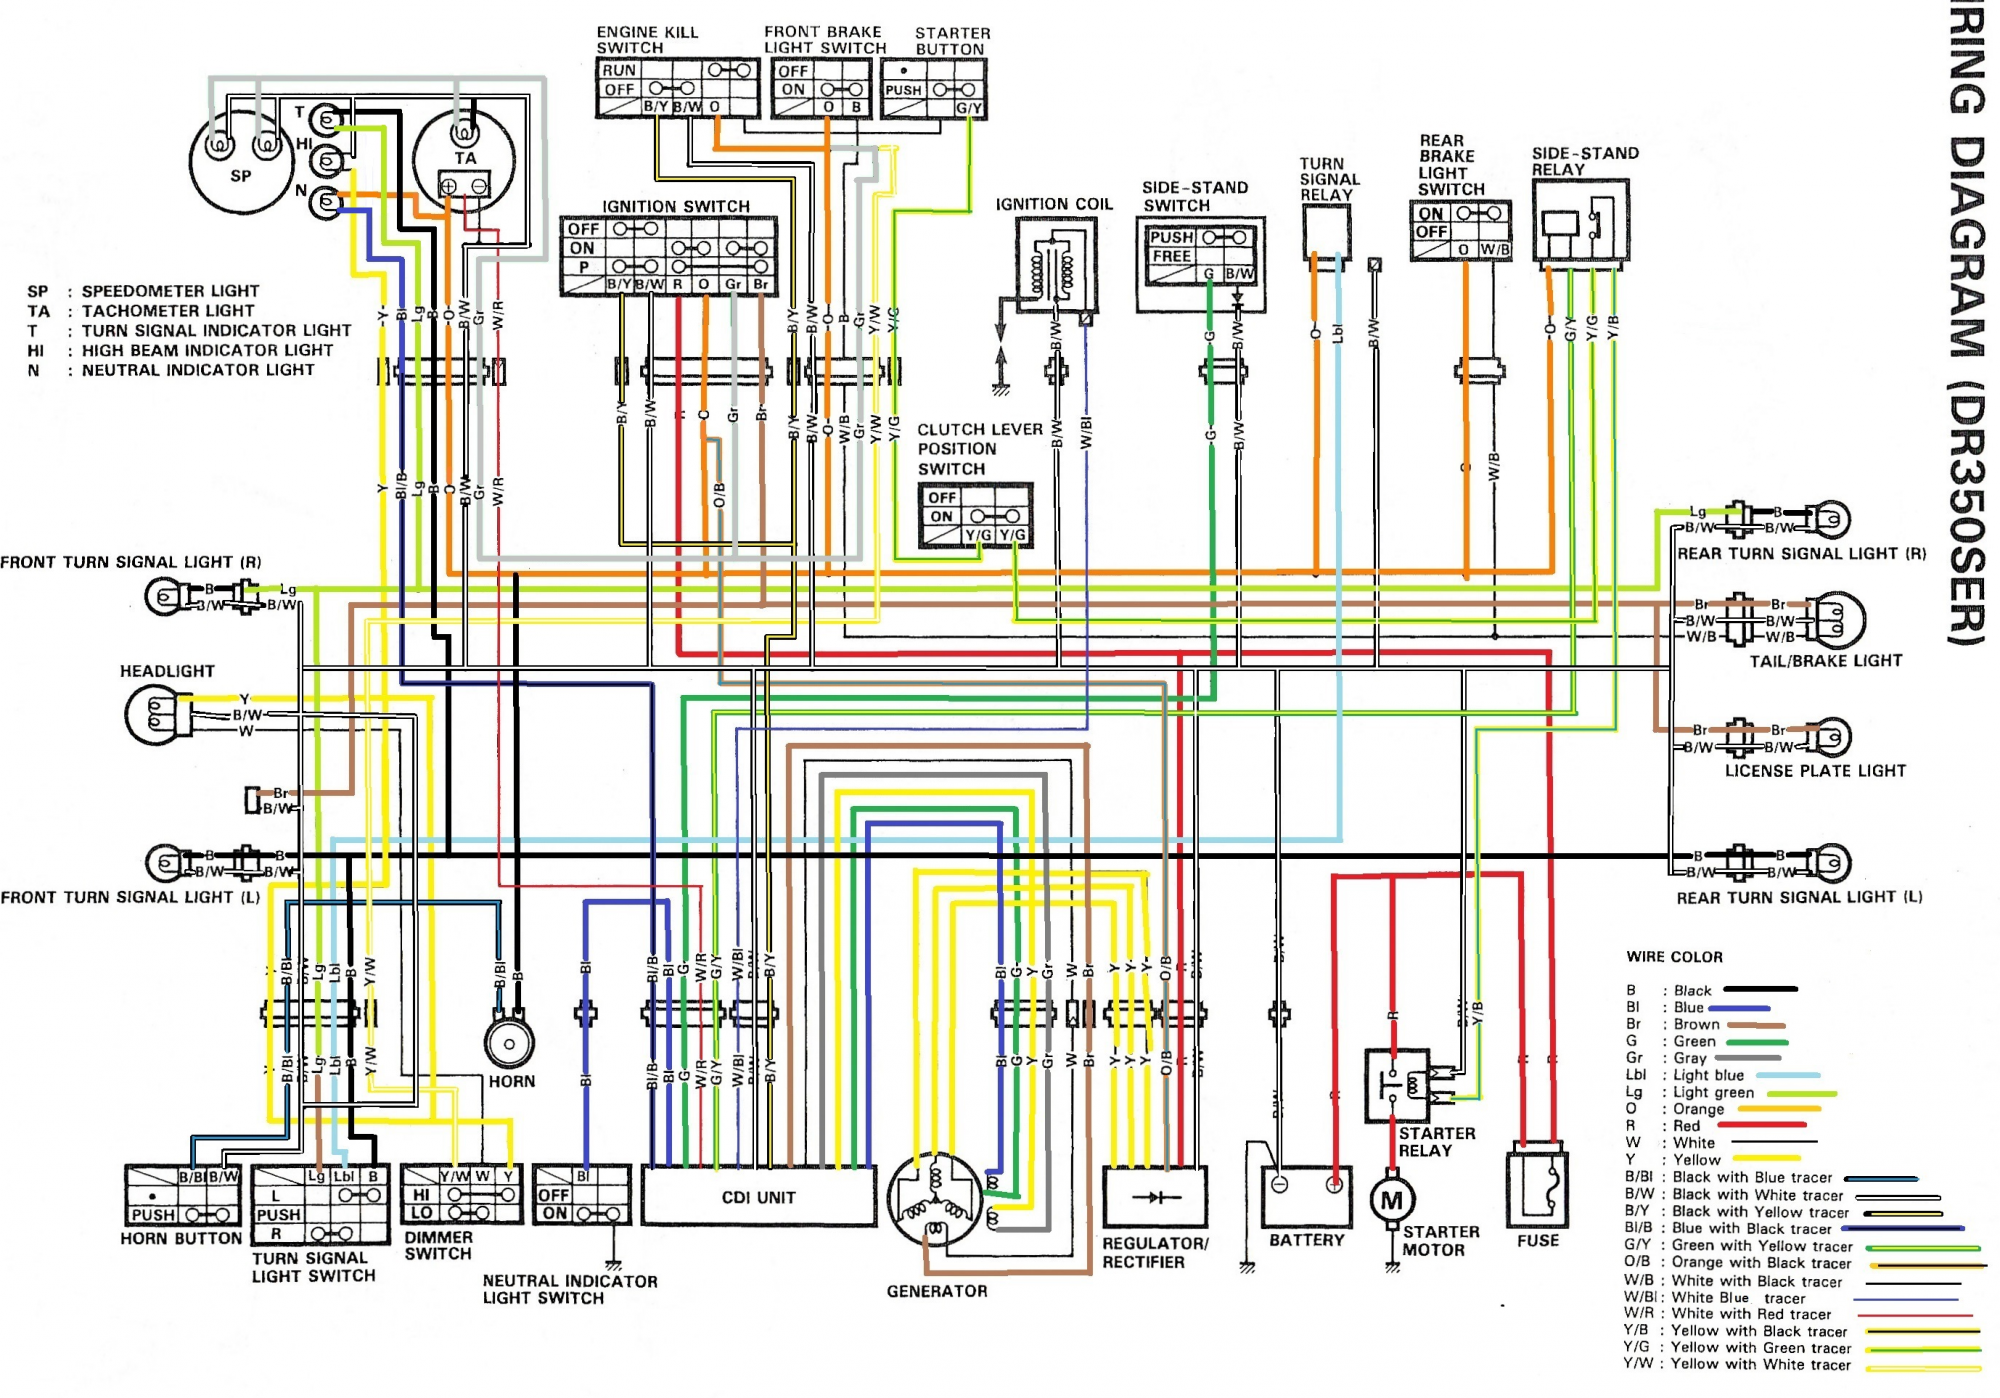 Suzuki Wiring Diagram from lh6.googleusercontent.com